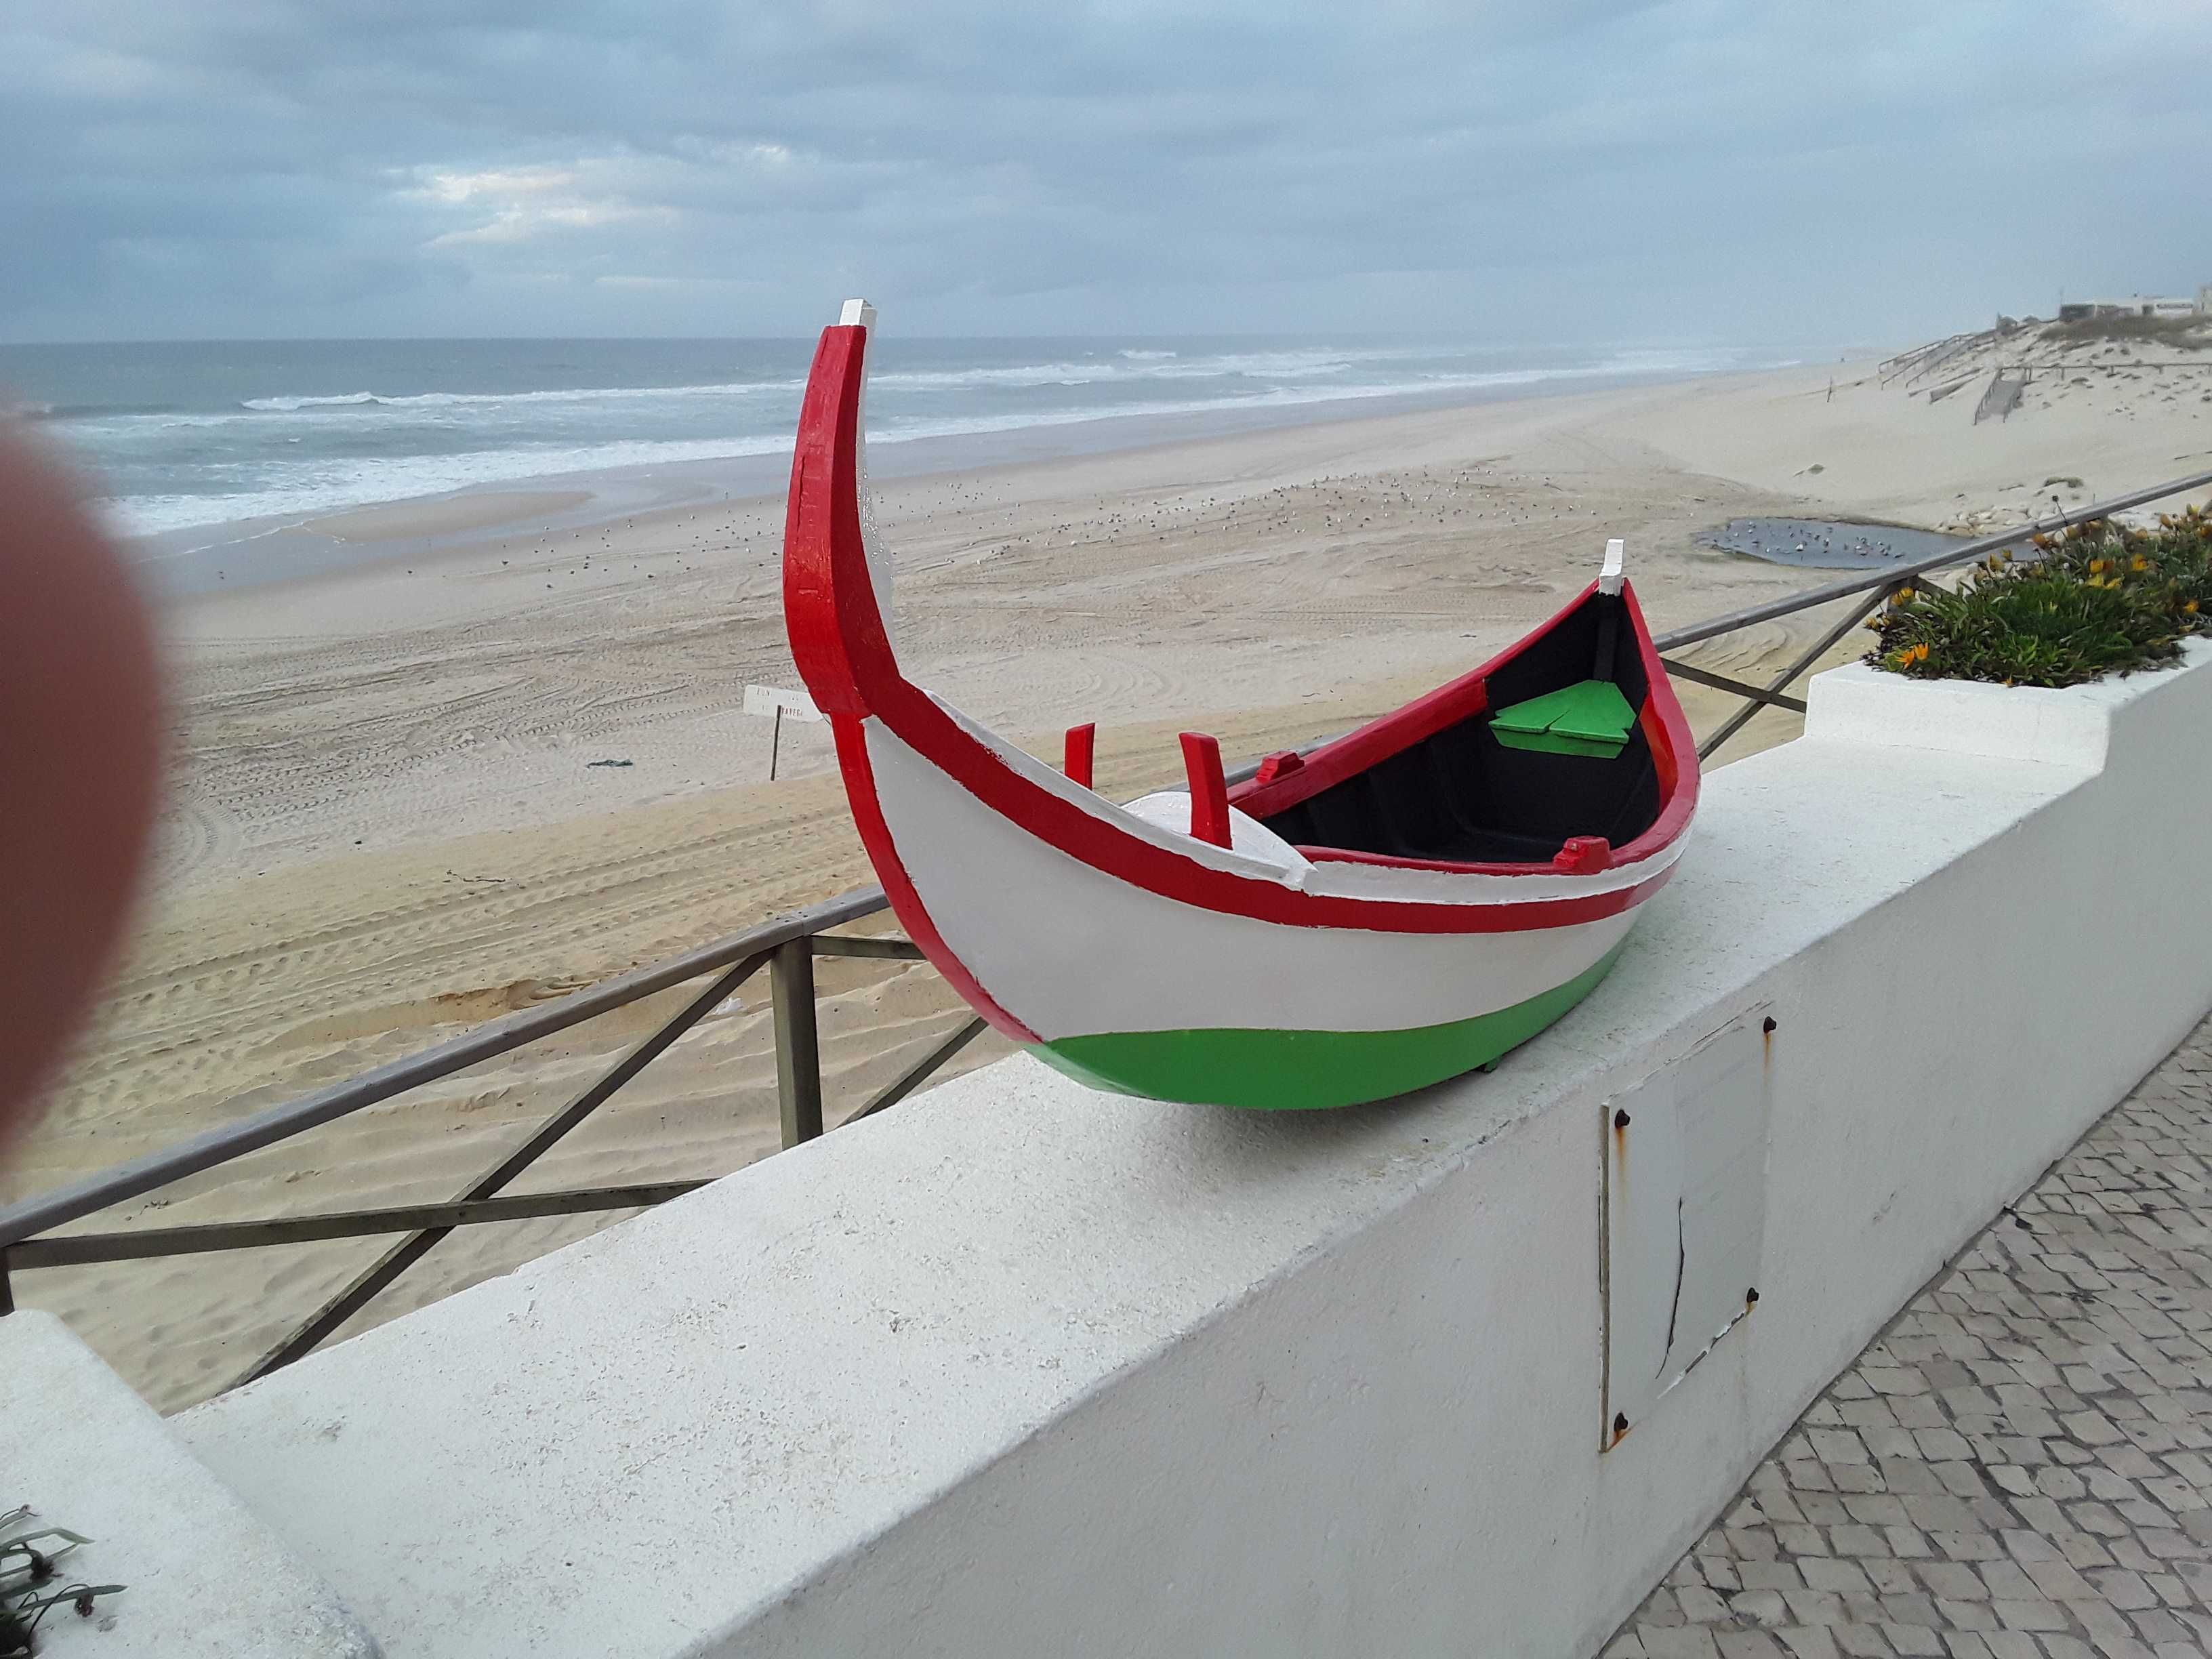 Barco de pesca artesanal ( arte xavega)